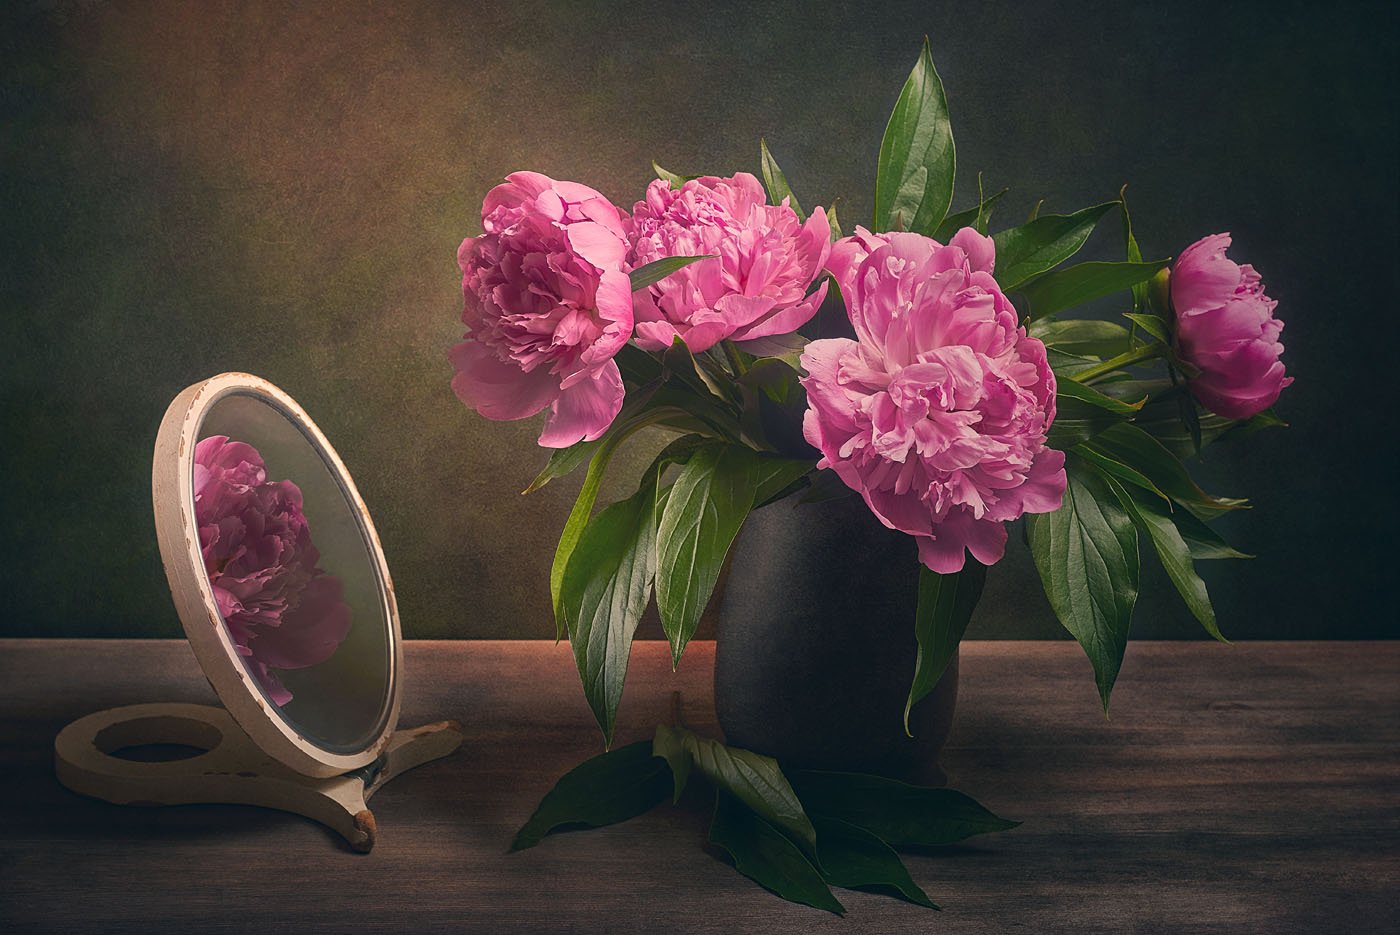 пионы, пион, цветы, букет, ваза, зеркало, отражение, стол, Игорь Токарев